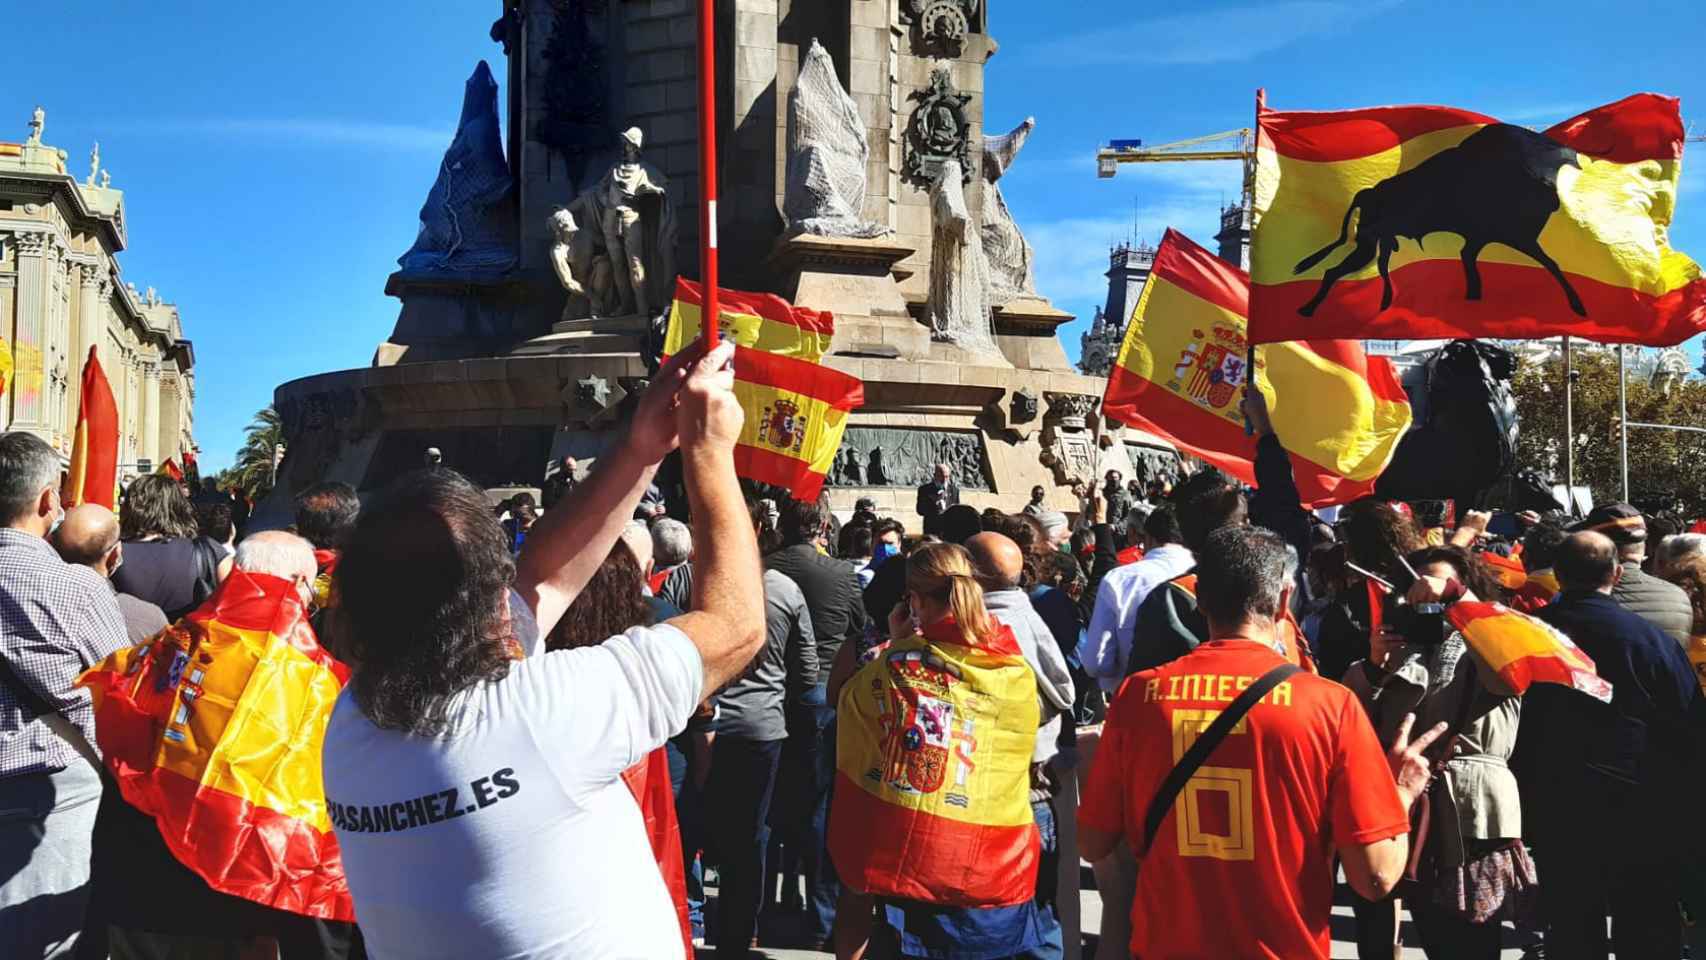 Banderas españolas este lunes en el monumento a Colón / @Miguichiqui